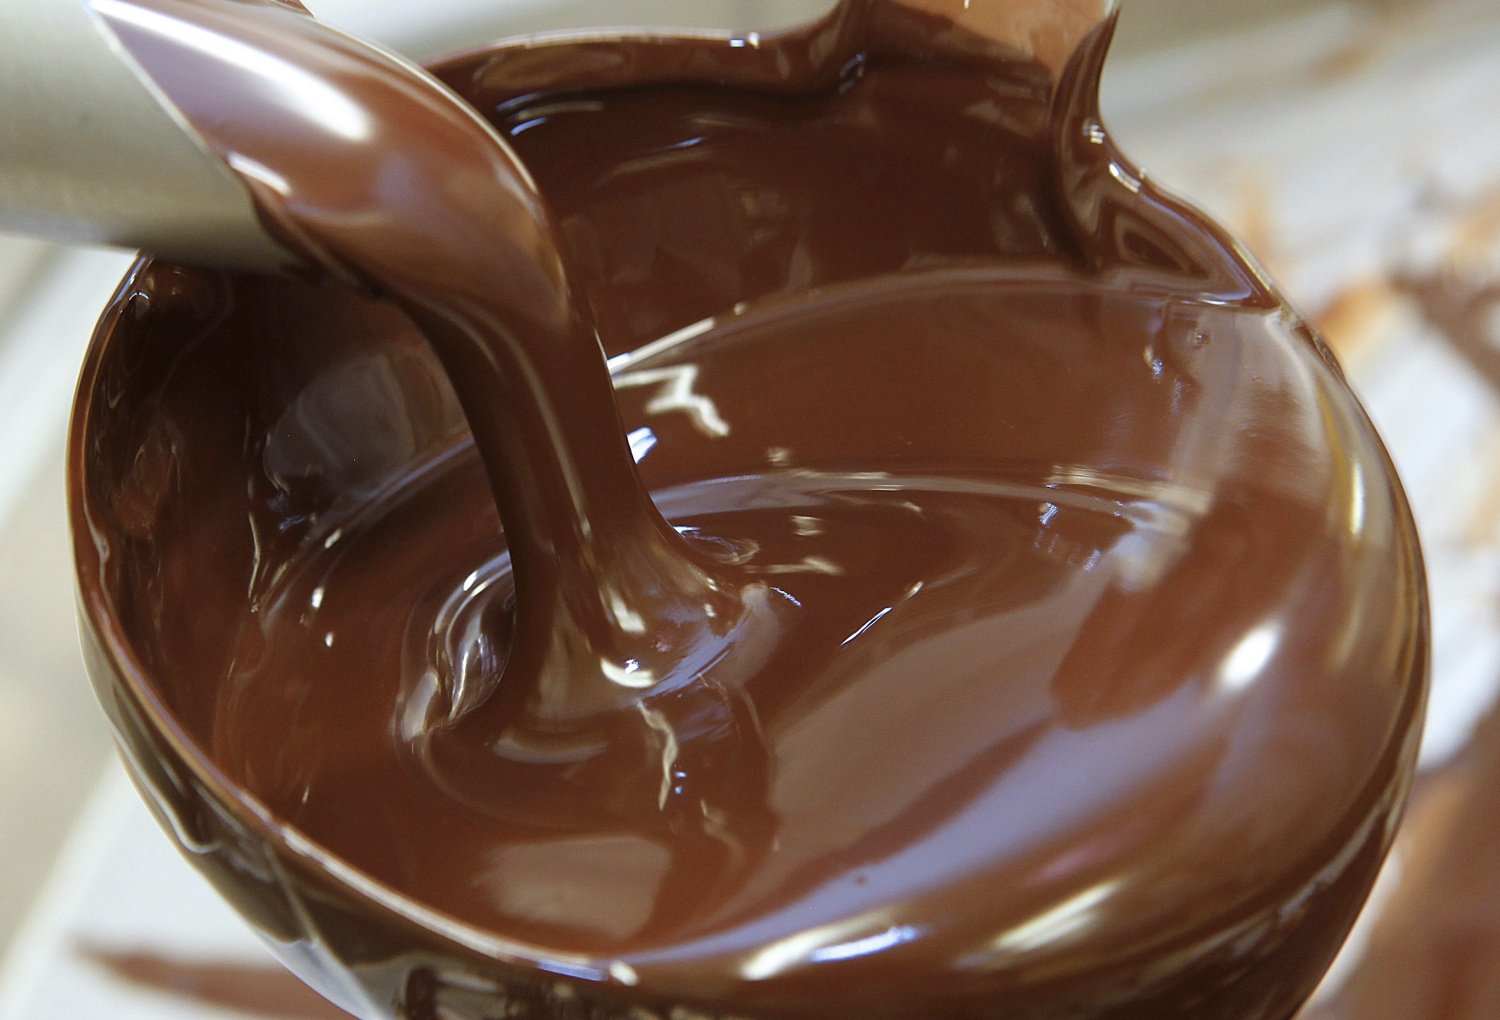 حاليا طريقة عمل صوص الشوكولاته CHOCLATE SAUCE بأبسط المكونات وأسهل الطرق